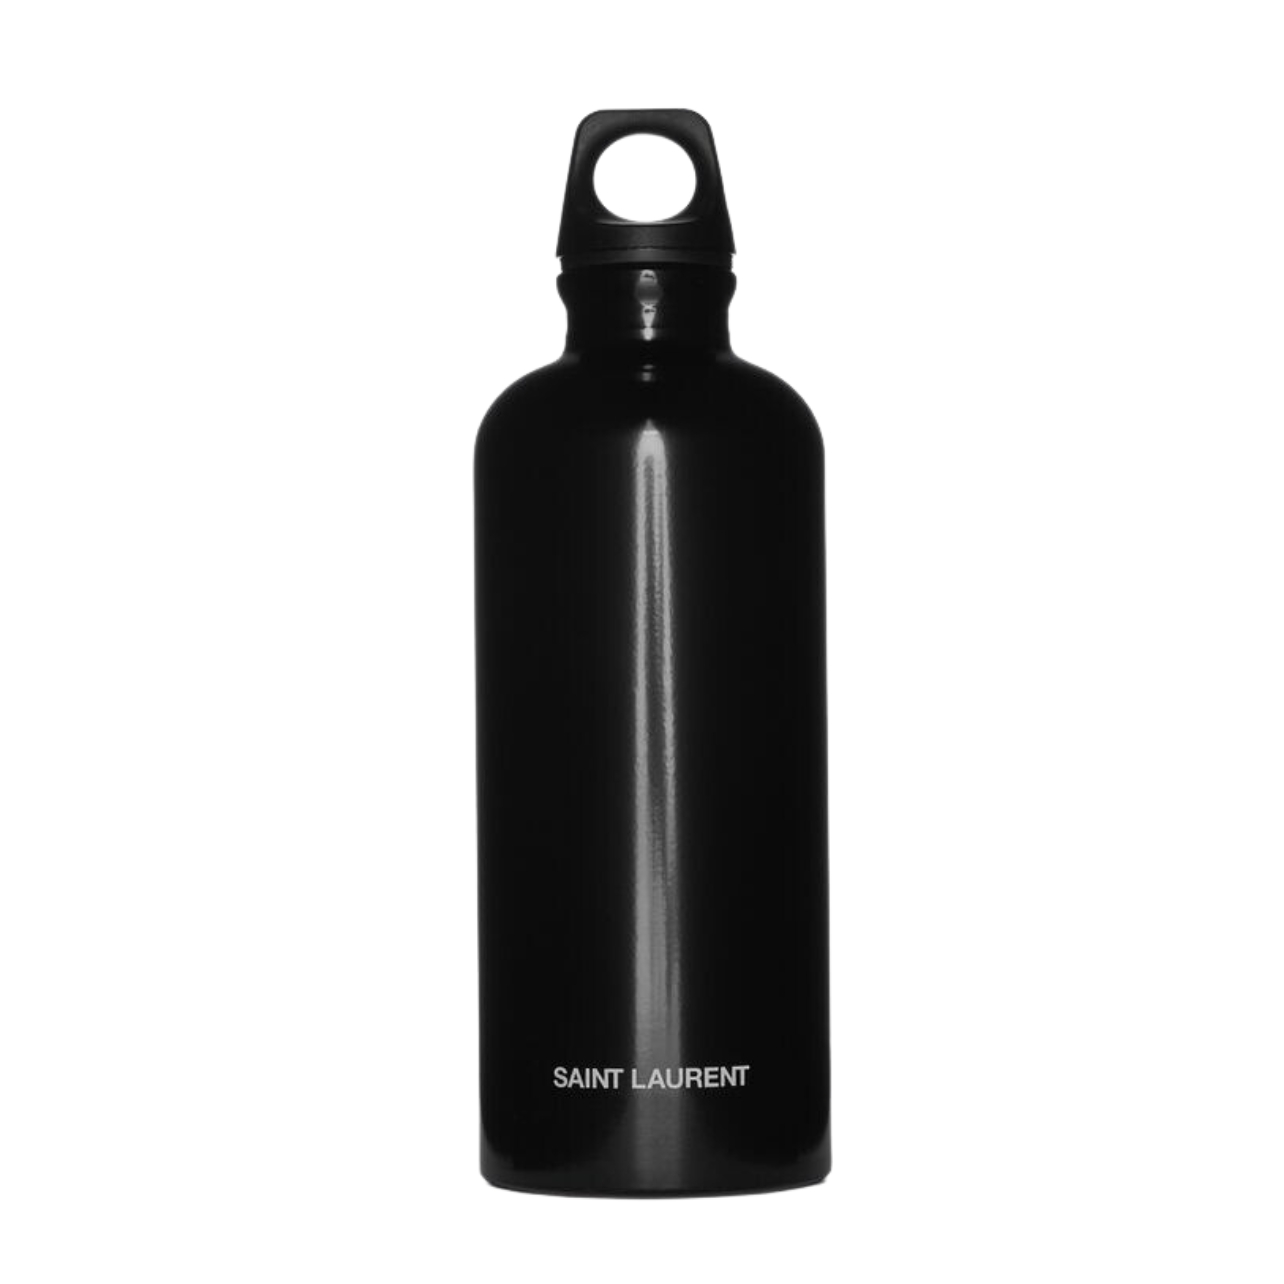 Black Saint Laurent aluminum bottle